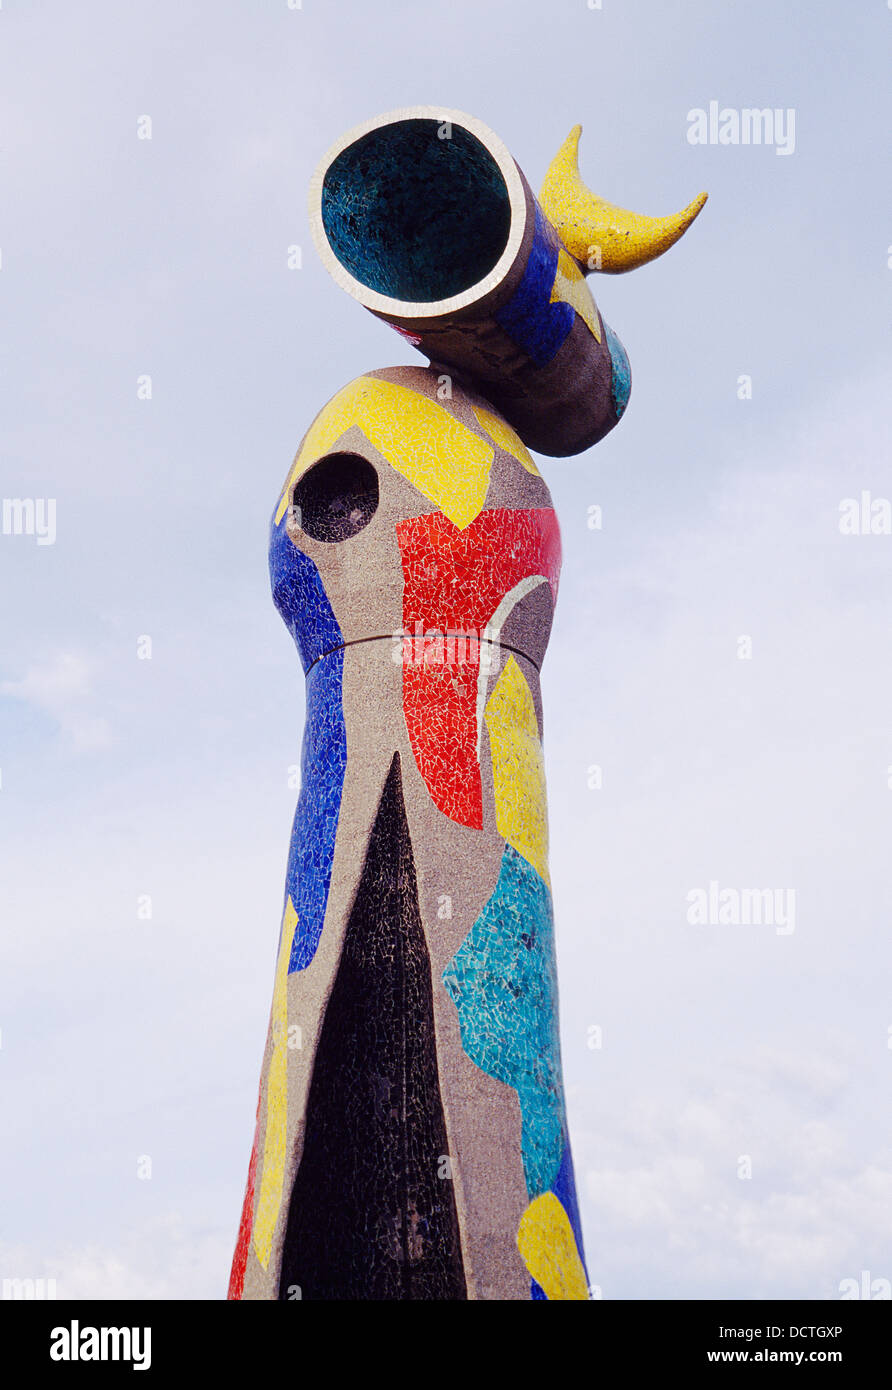 Femme et oiseau, sculpture de Joan Miro. Parc Miro, Barcelone, Catalogne, Espagne. Banque D'Images